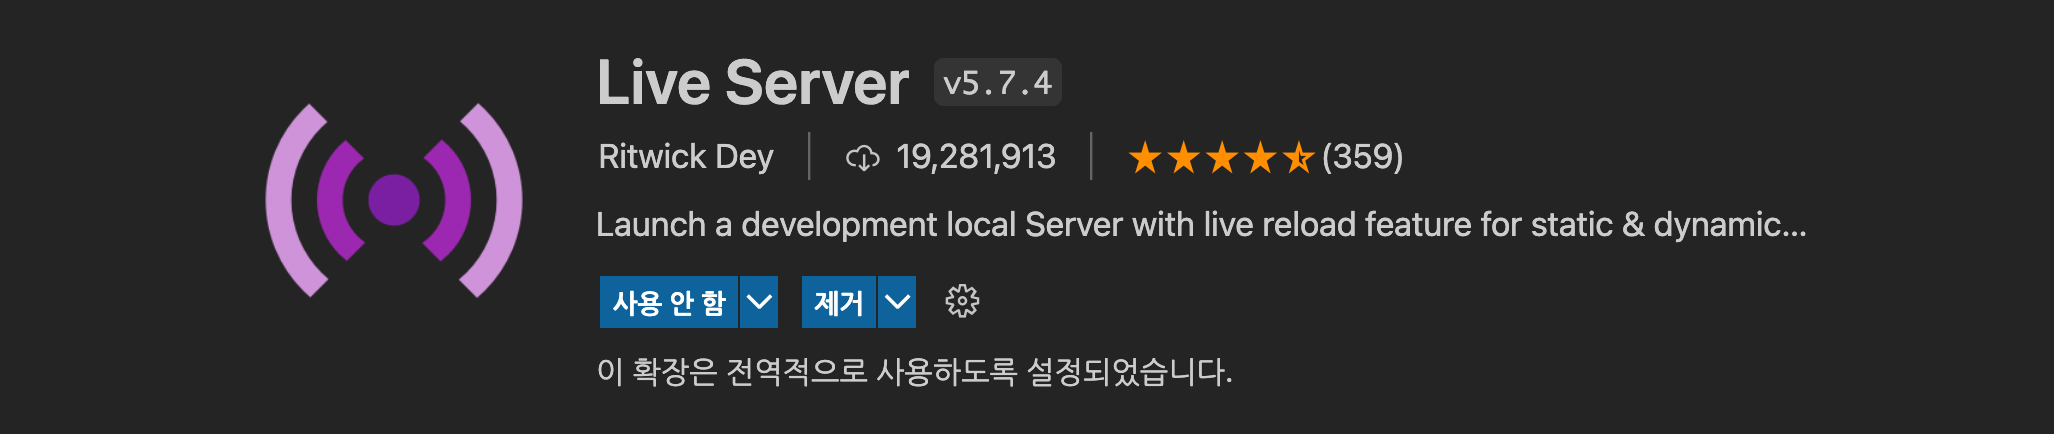 live_server